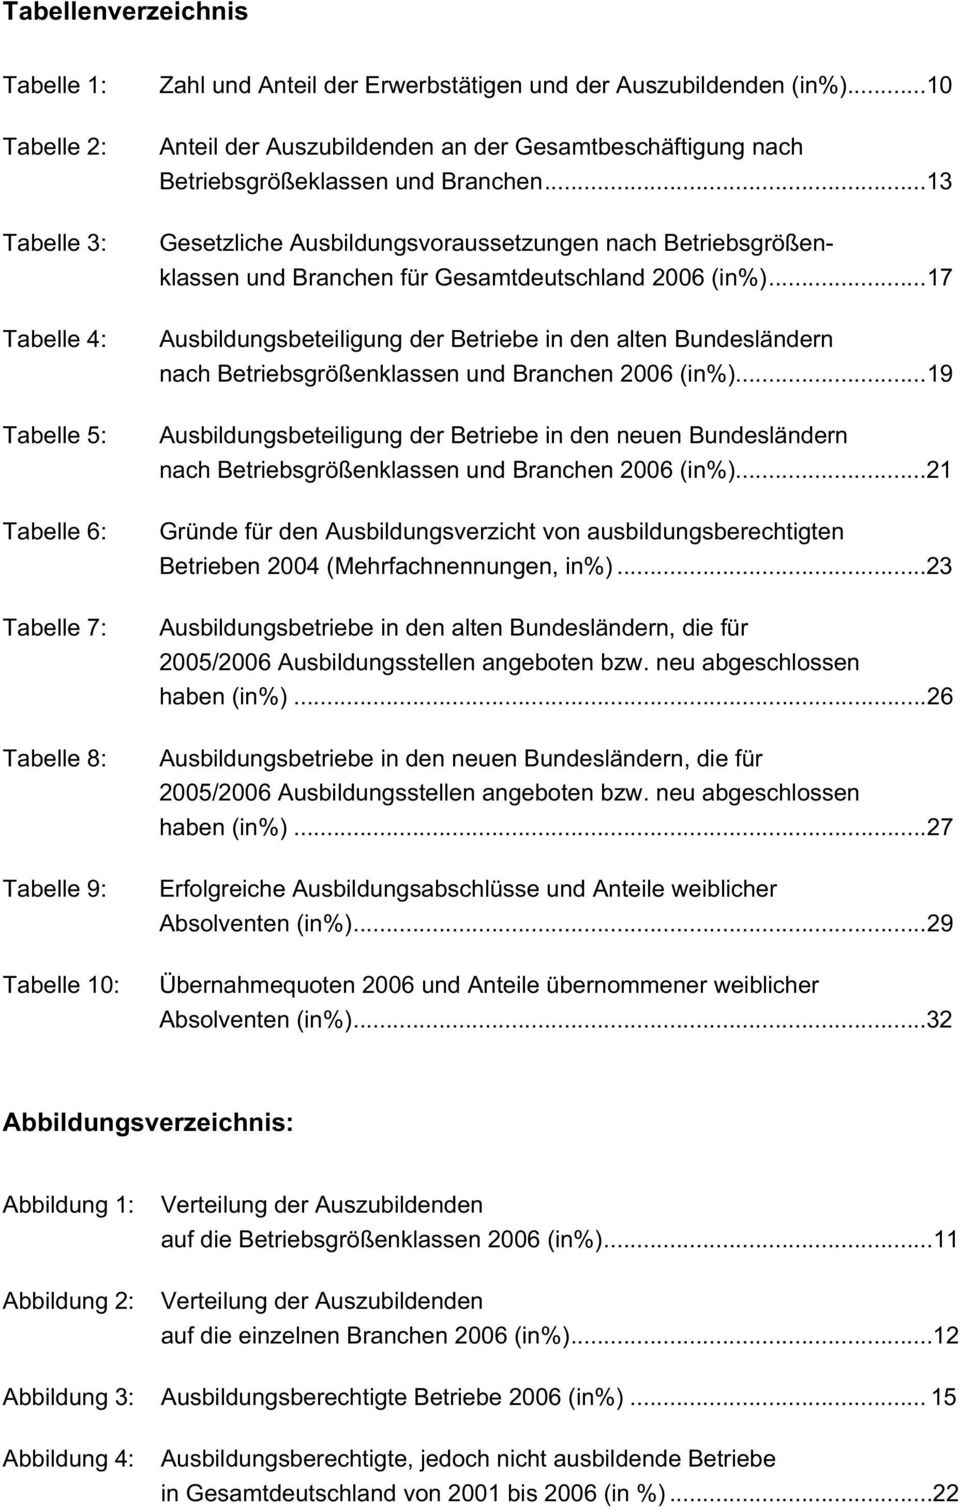 ..13 Gesetzliche Ausbildungsvoraussetzungen nach Betriebsgrößenklassen und Branchen für Gesamtdeutschland 2006 (in%).